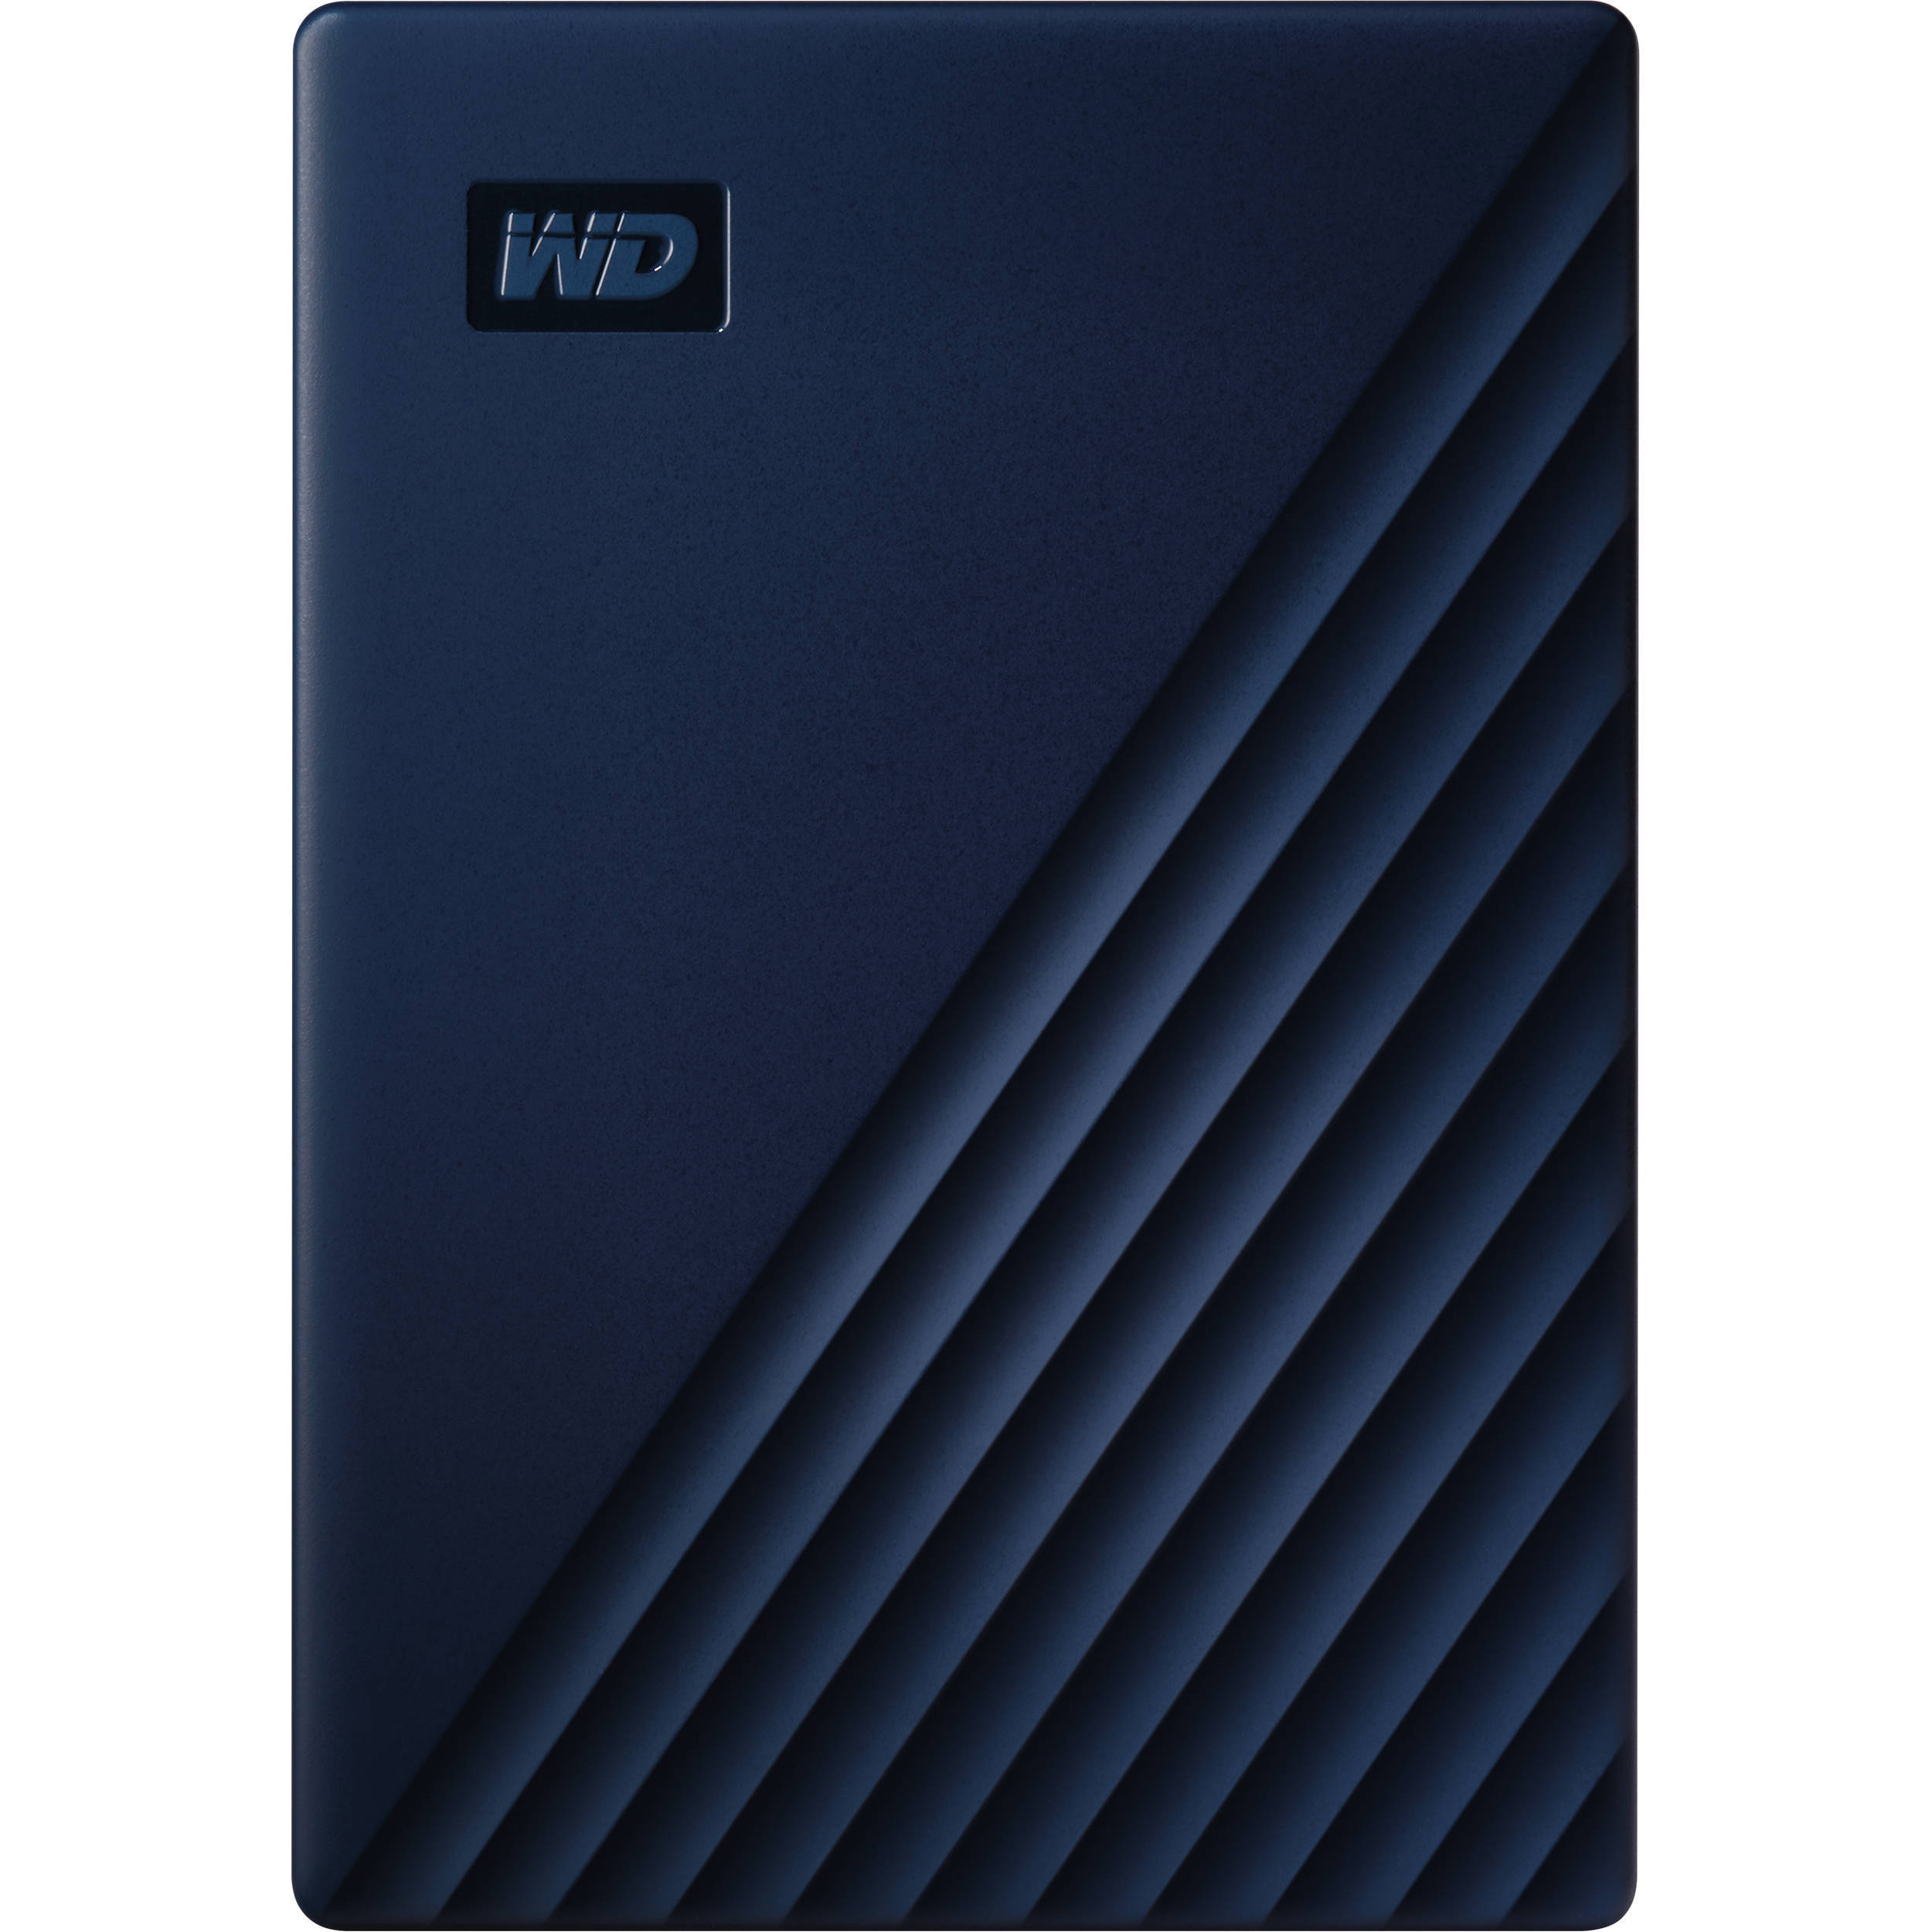 Western Digital My Passport for Mac USB 3.0 External Hard Drive (Midnight Blue, 2TB)